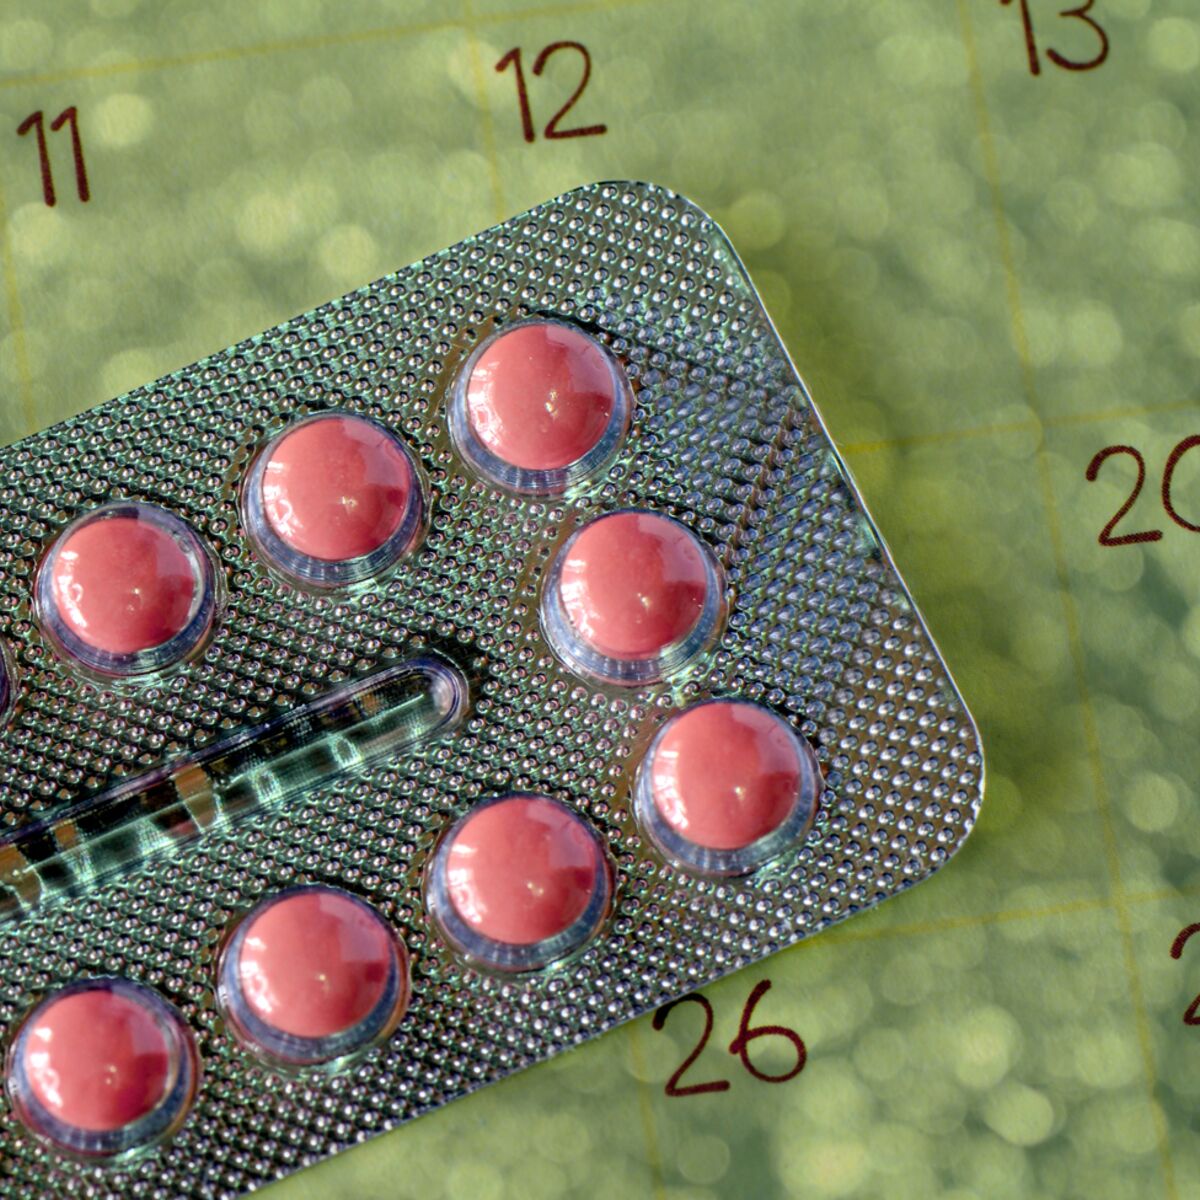 Bientôt des pilules contraceptives délivrées sans ordonnance ...